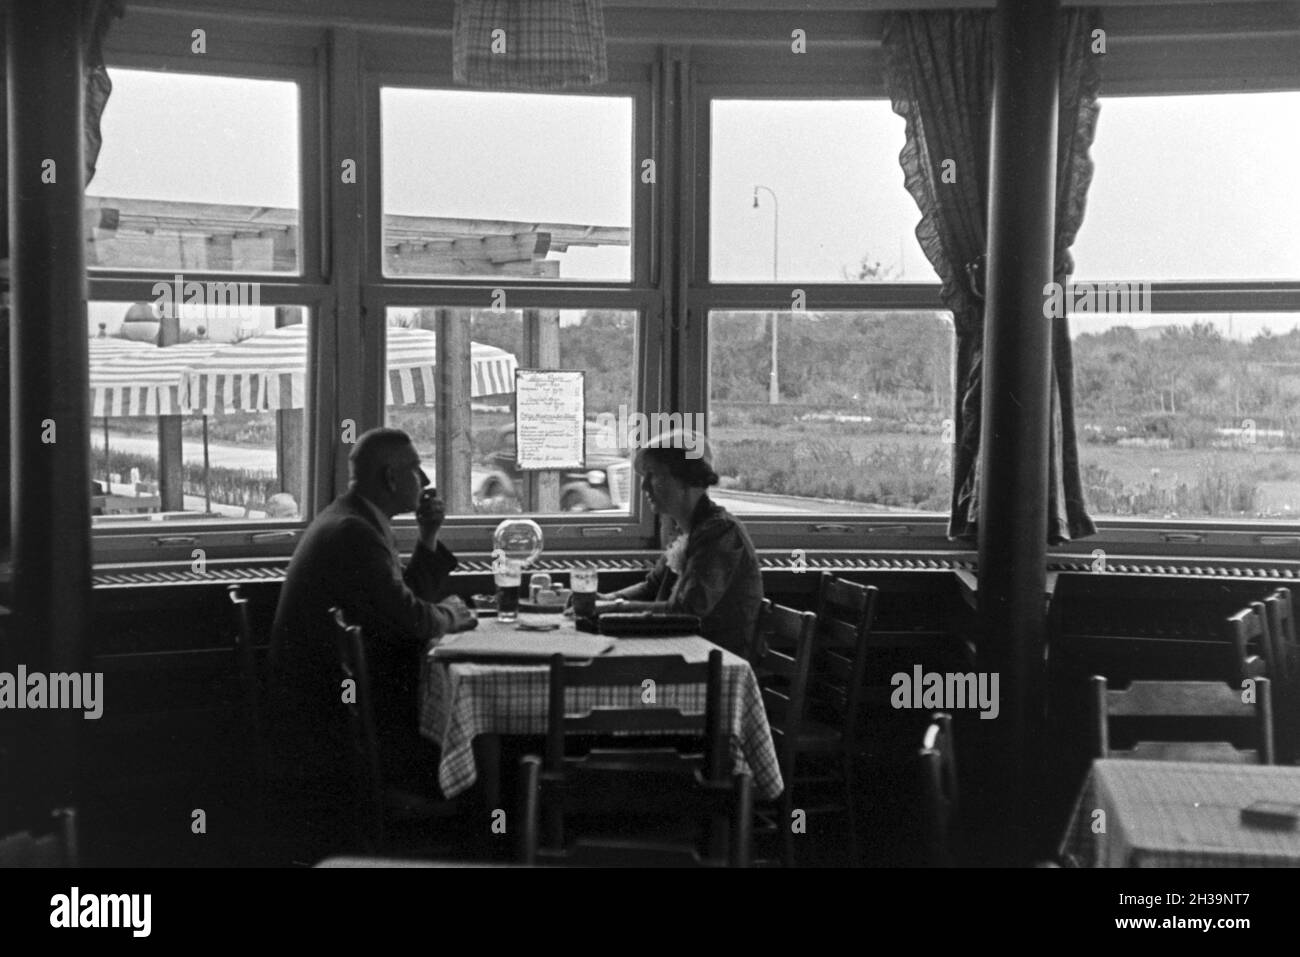 Ein Paar im Restaurant von Reichsautobahngaststätte, 1930er Jahre Deutschland. Un couple au restaurant d'un autoroute Reichsautobahn roadhouse, Allemagne 1930. Banque D'Images